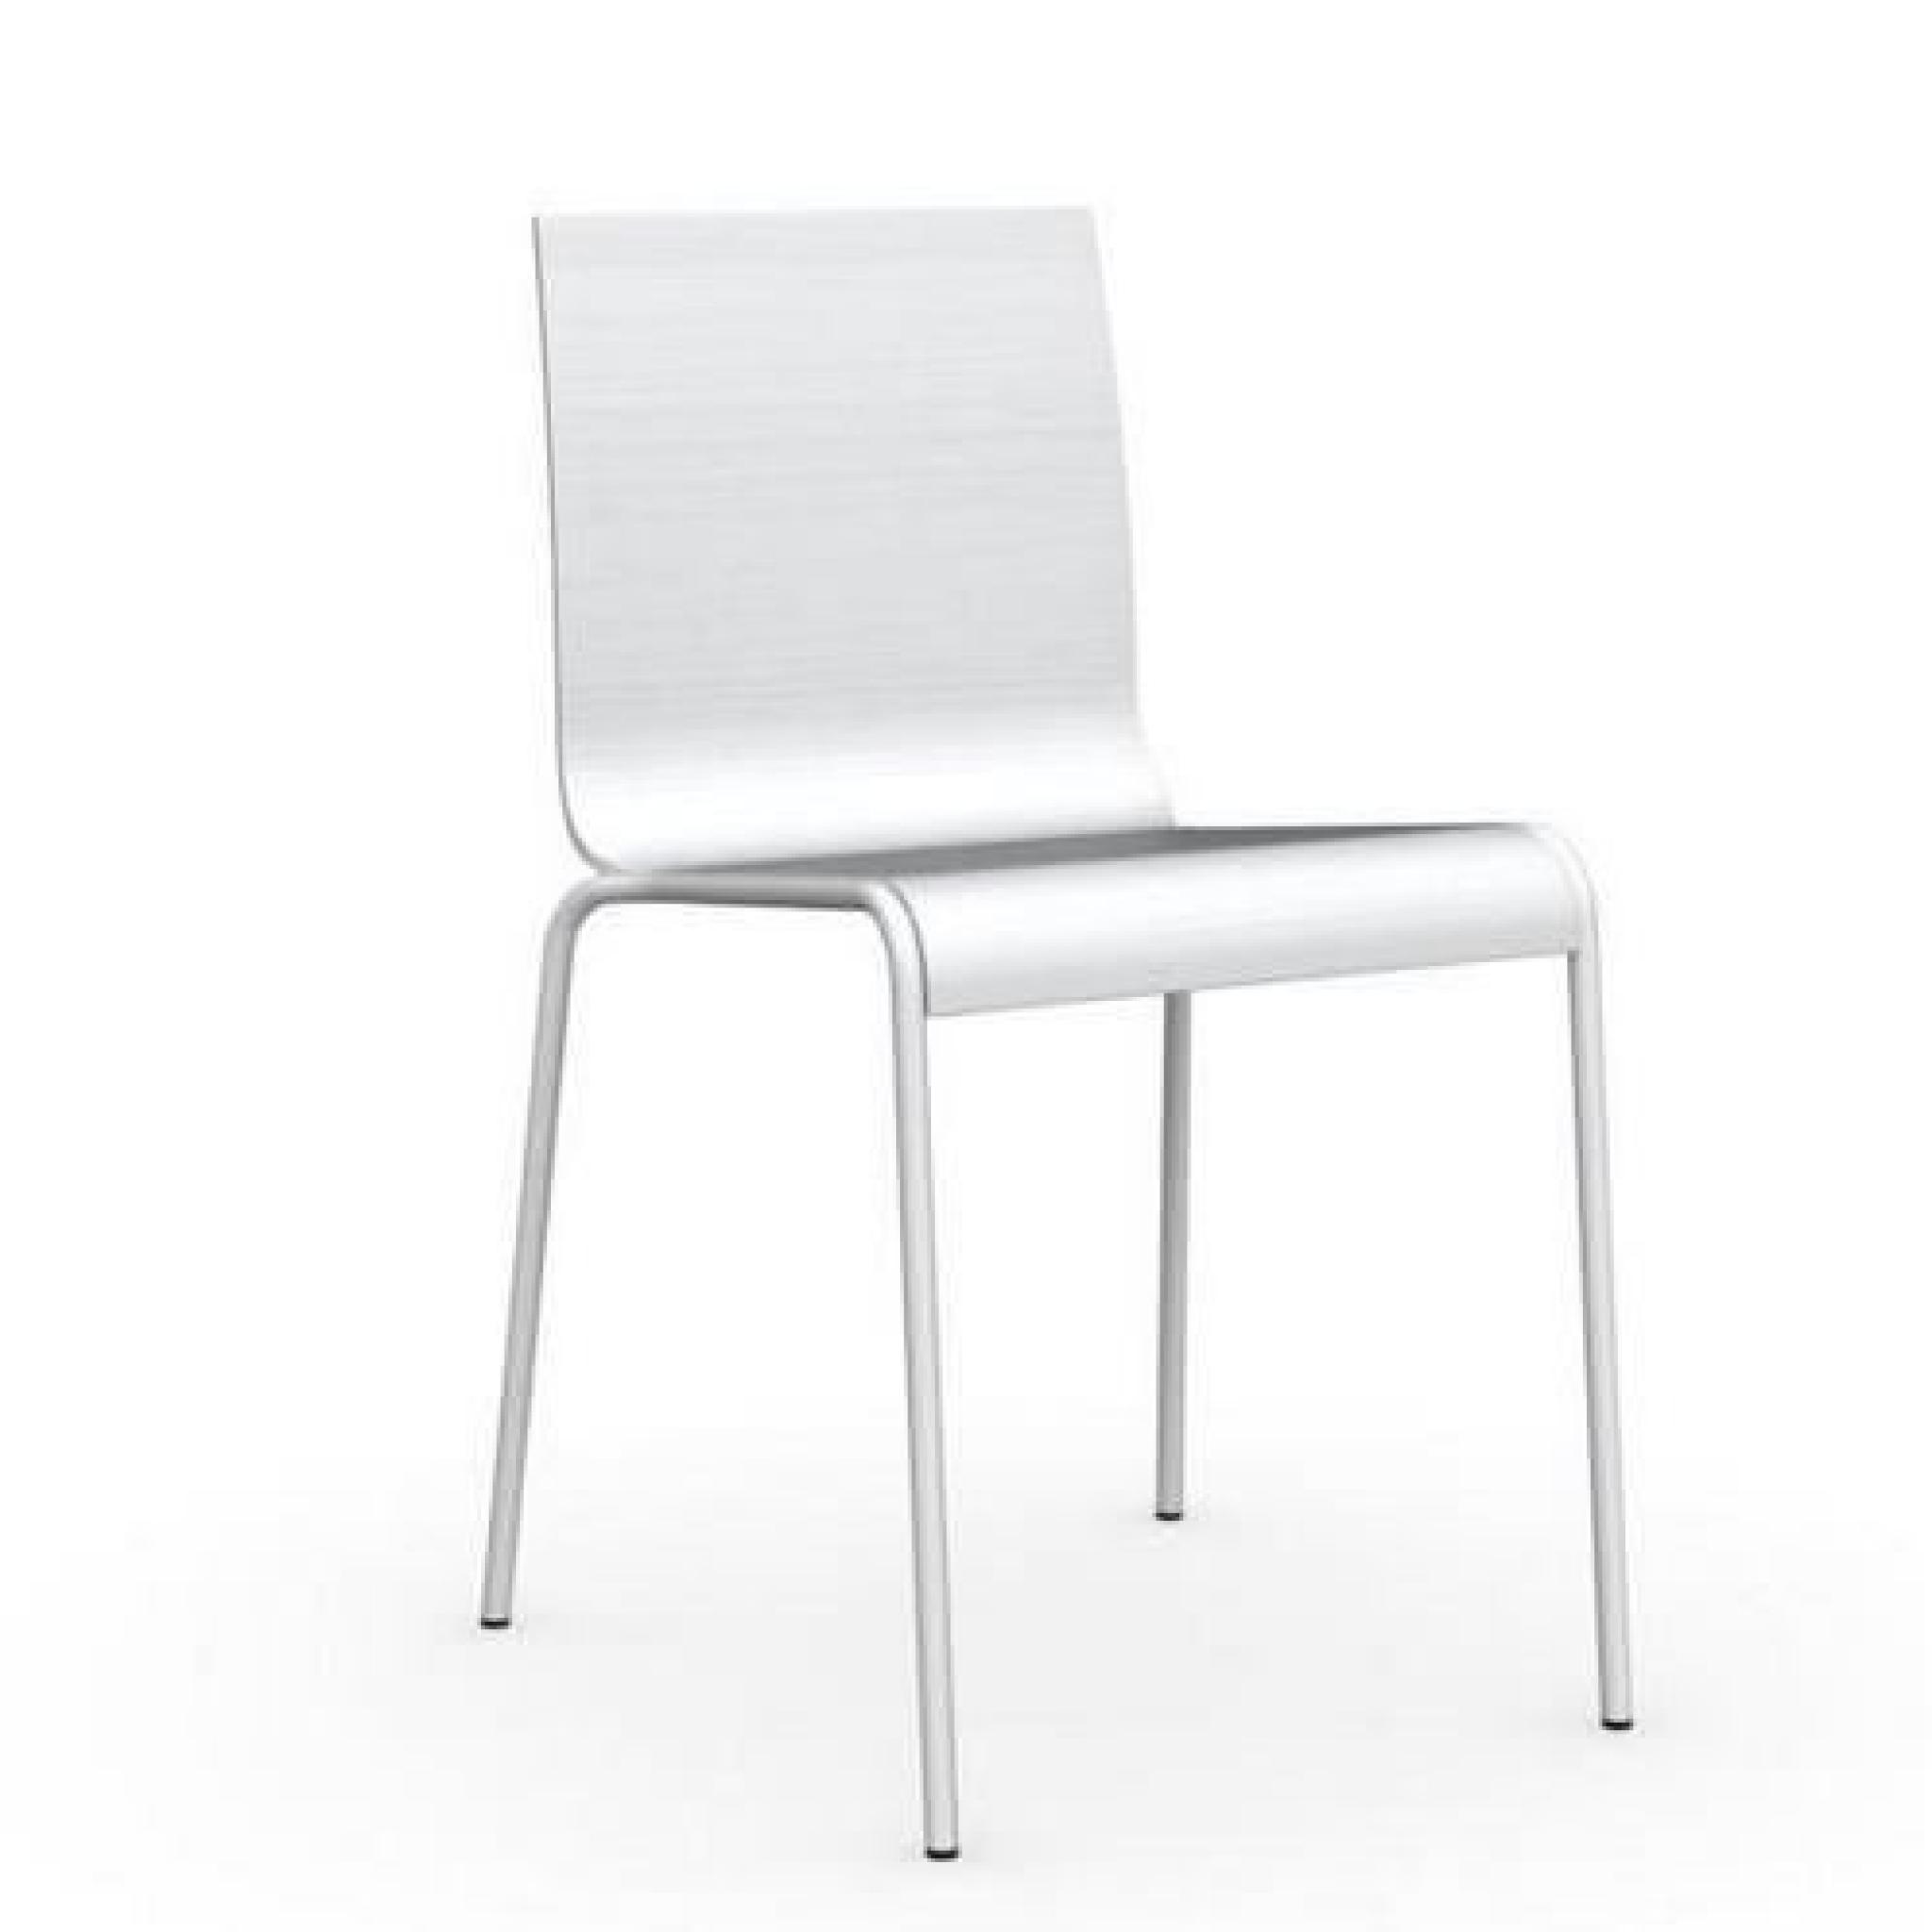 Chaise ONLINE en chêne blanc brossé de calligaris